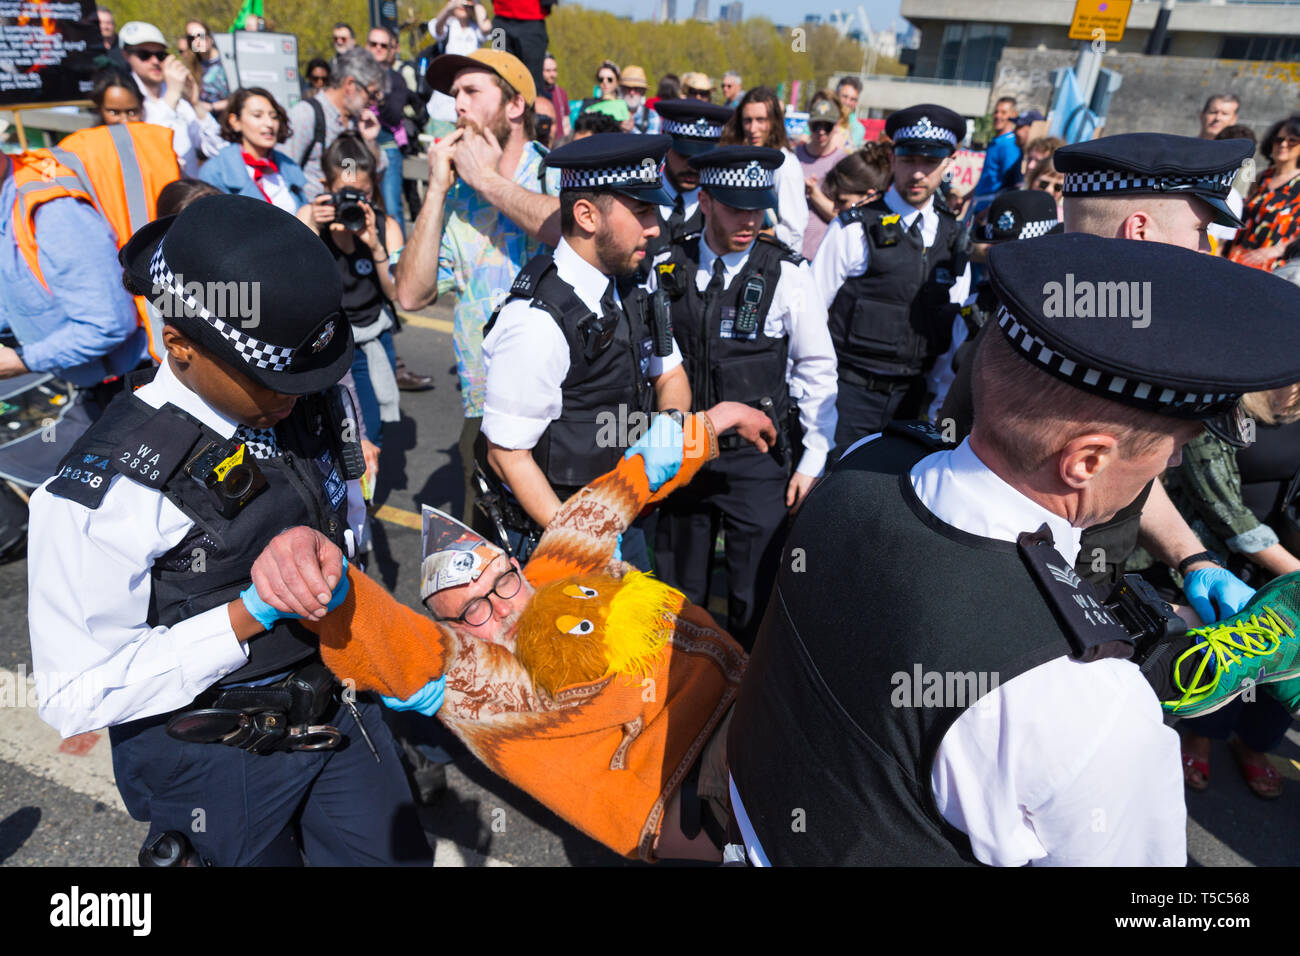 Die Polizei verhaftete ein demonstrant am Aussterben Rebellion Camp auf der Waterloo Bridge, London Stockfoto